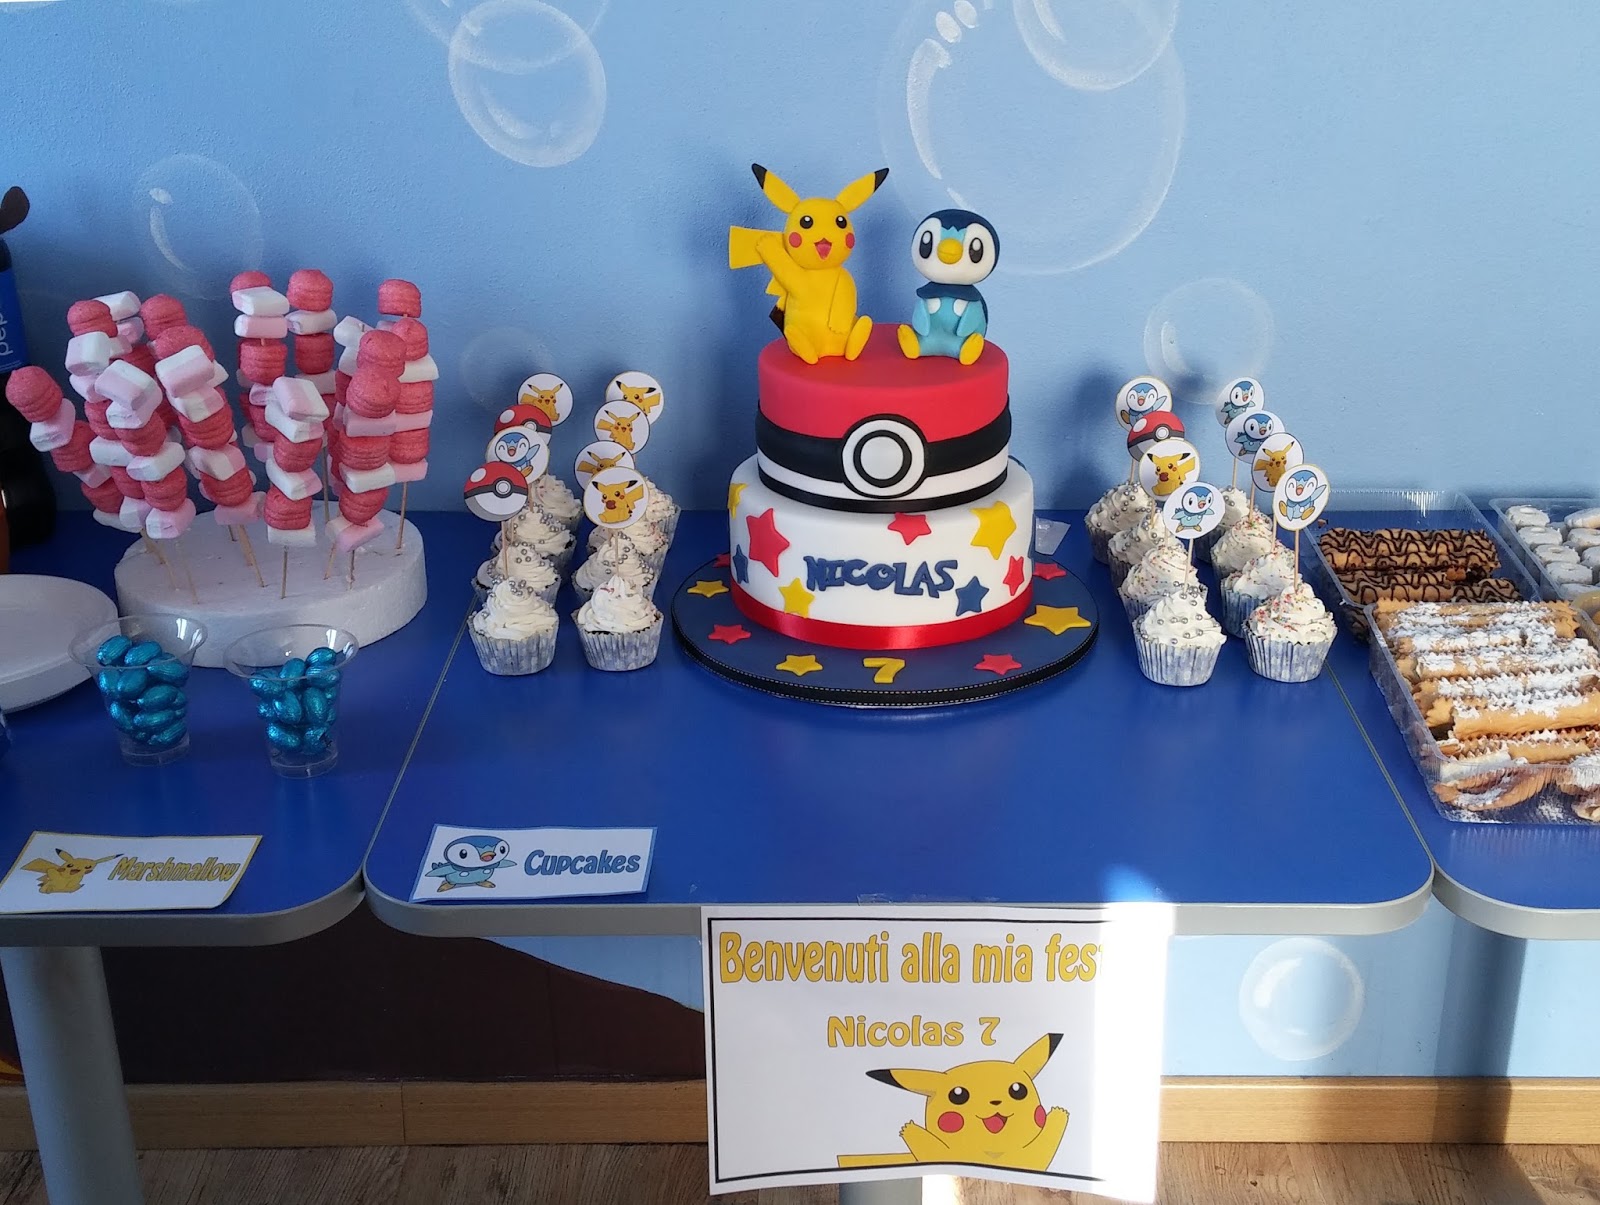 Torta e cupcake decorati dei Pokemon con Pikachu e Piplup tridimensionali  in pasta di zucchero  Polvere di Zucchero:cake design e sugar art.Corsi decorazione  torte,cupcakes e fiori.Shop on line